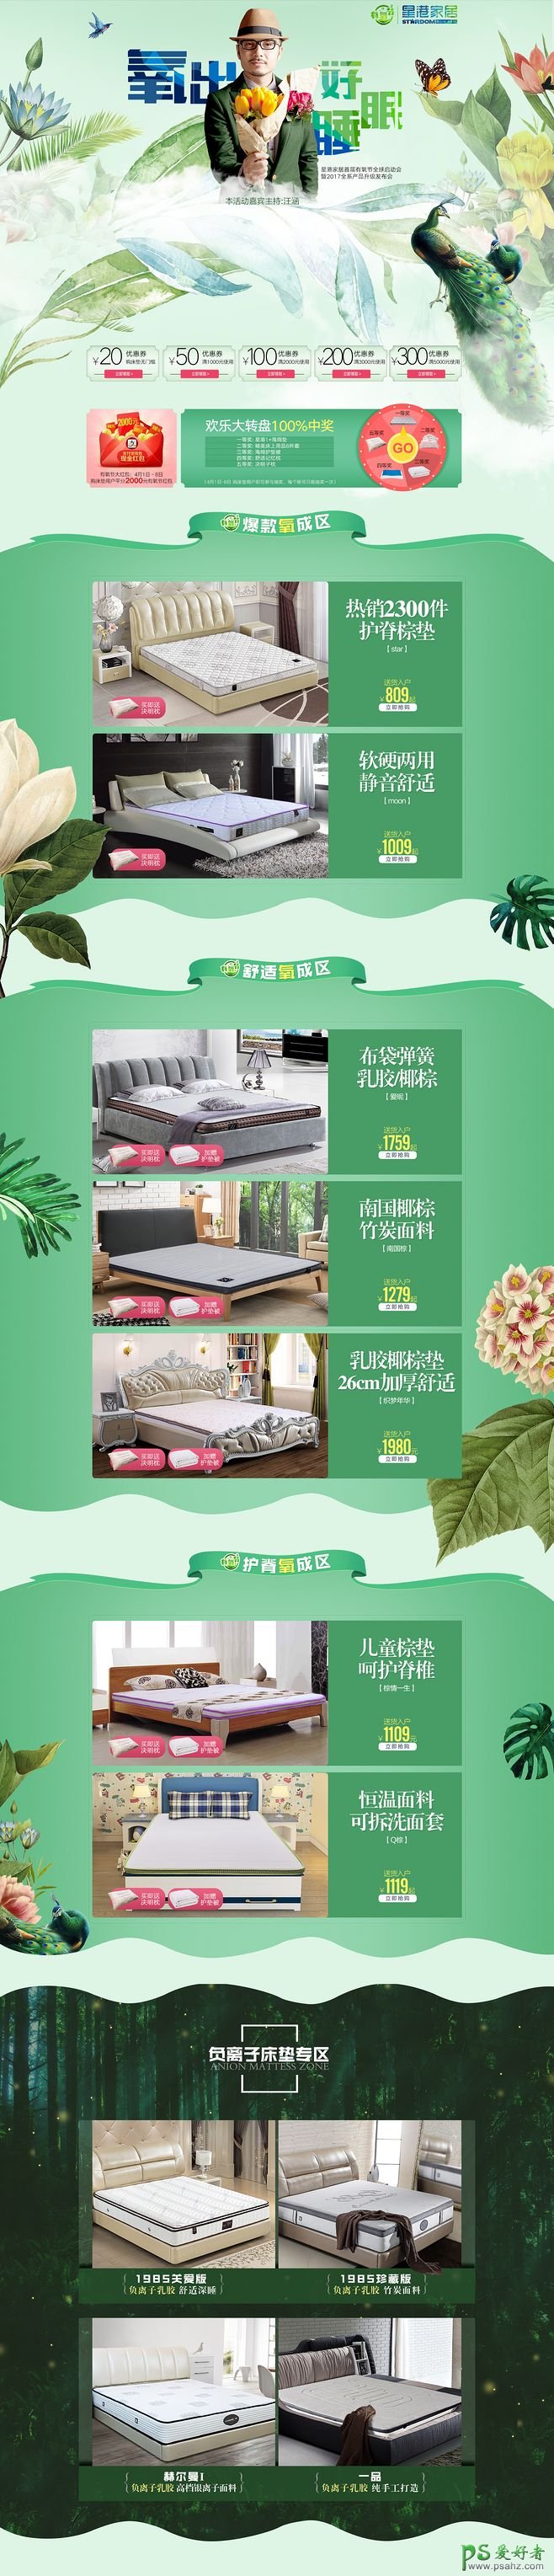 欣赏一例卖床垫的电商网站首页设计作品，床垫电商网站设计。